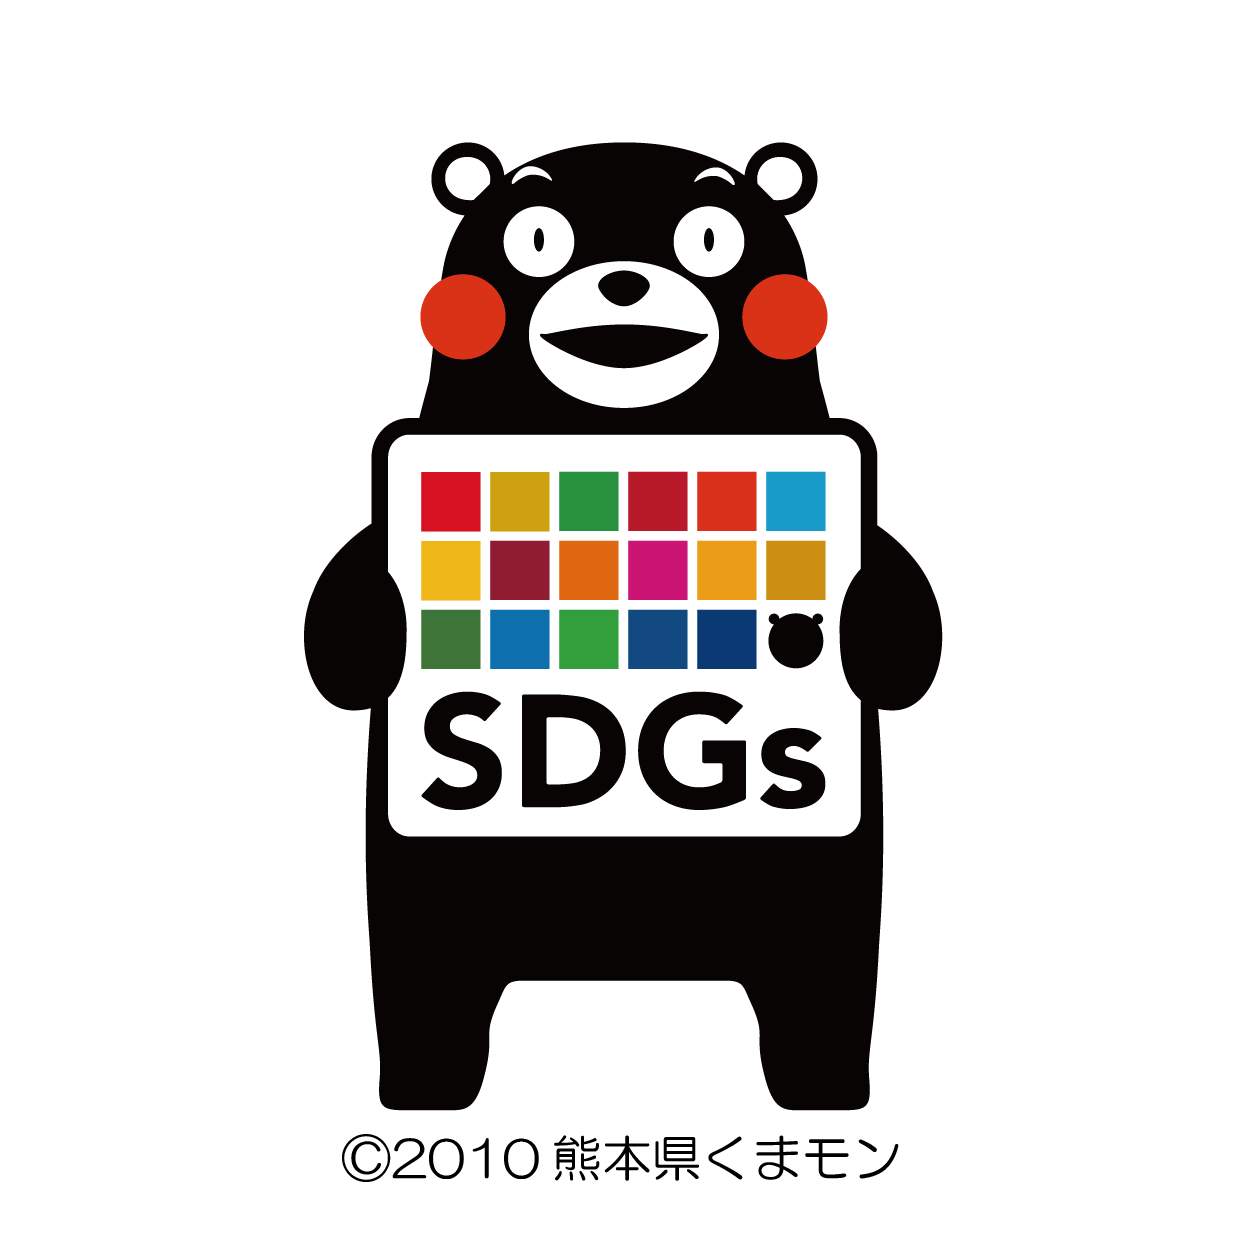 熊本県SDGs登録